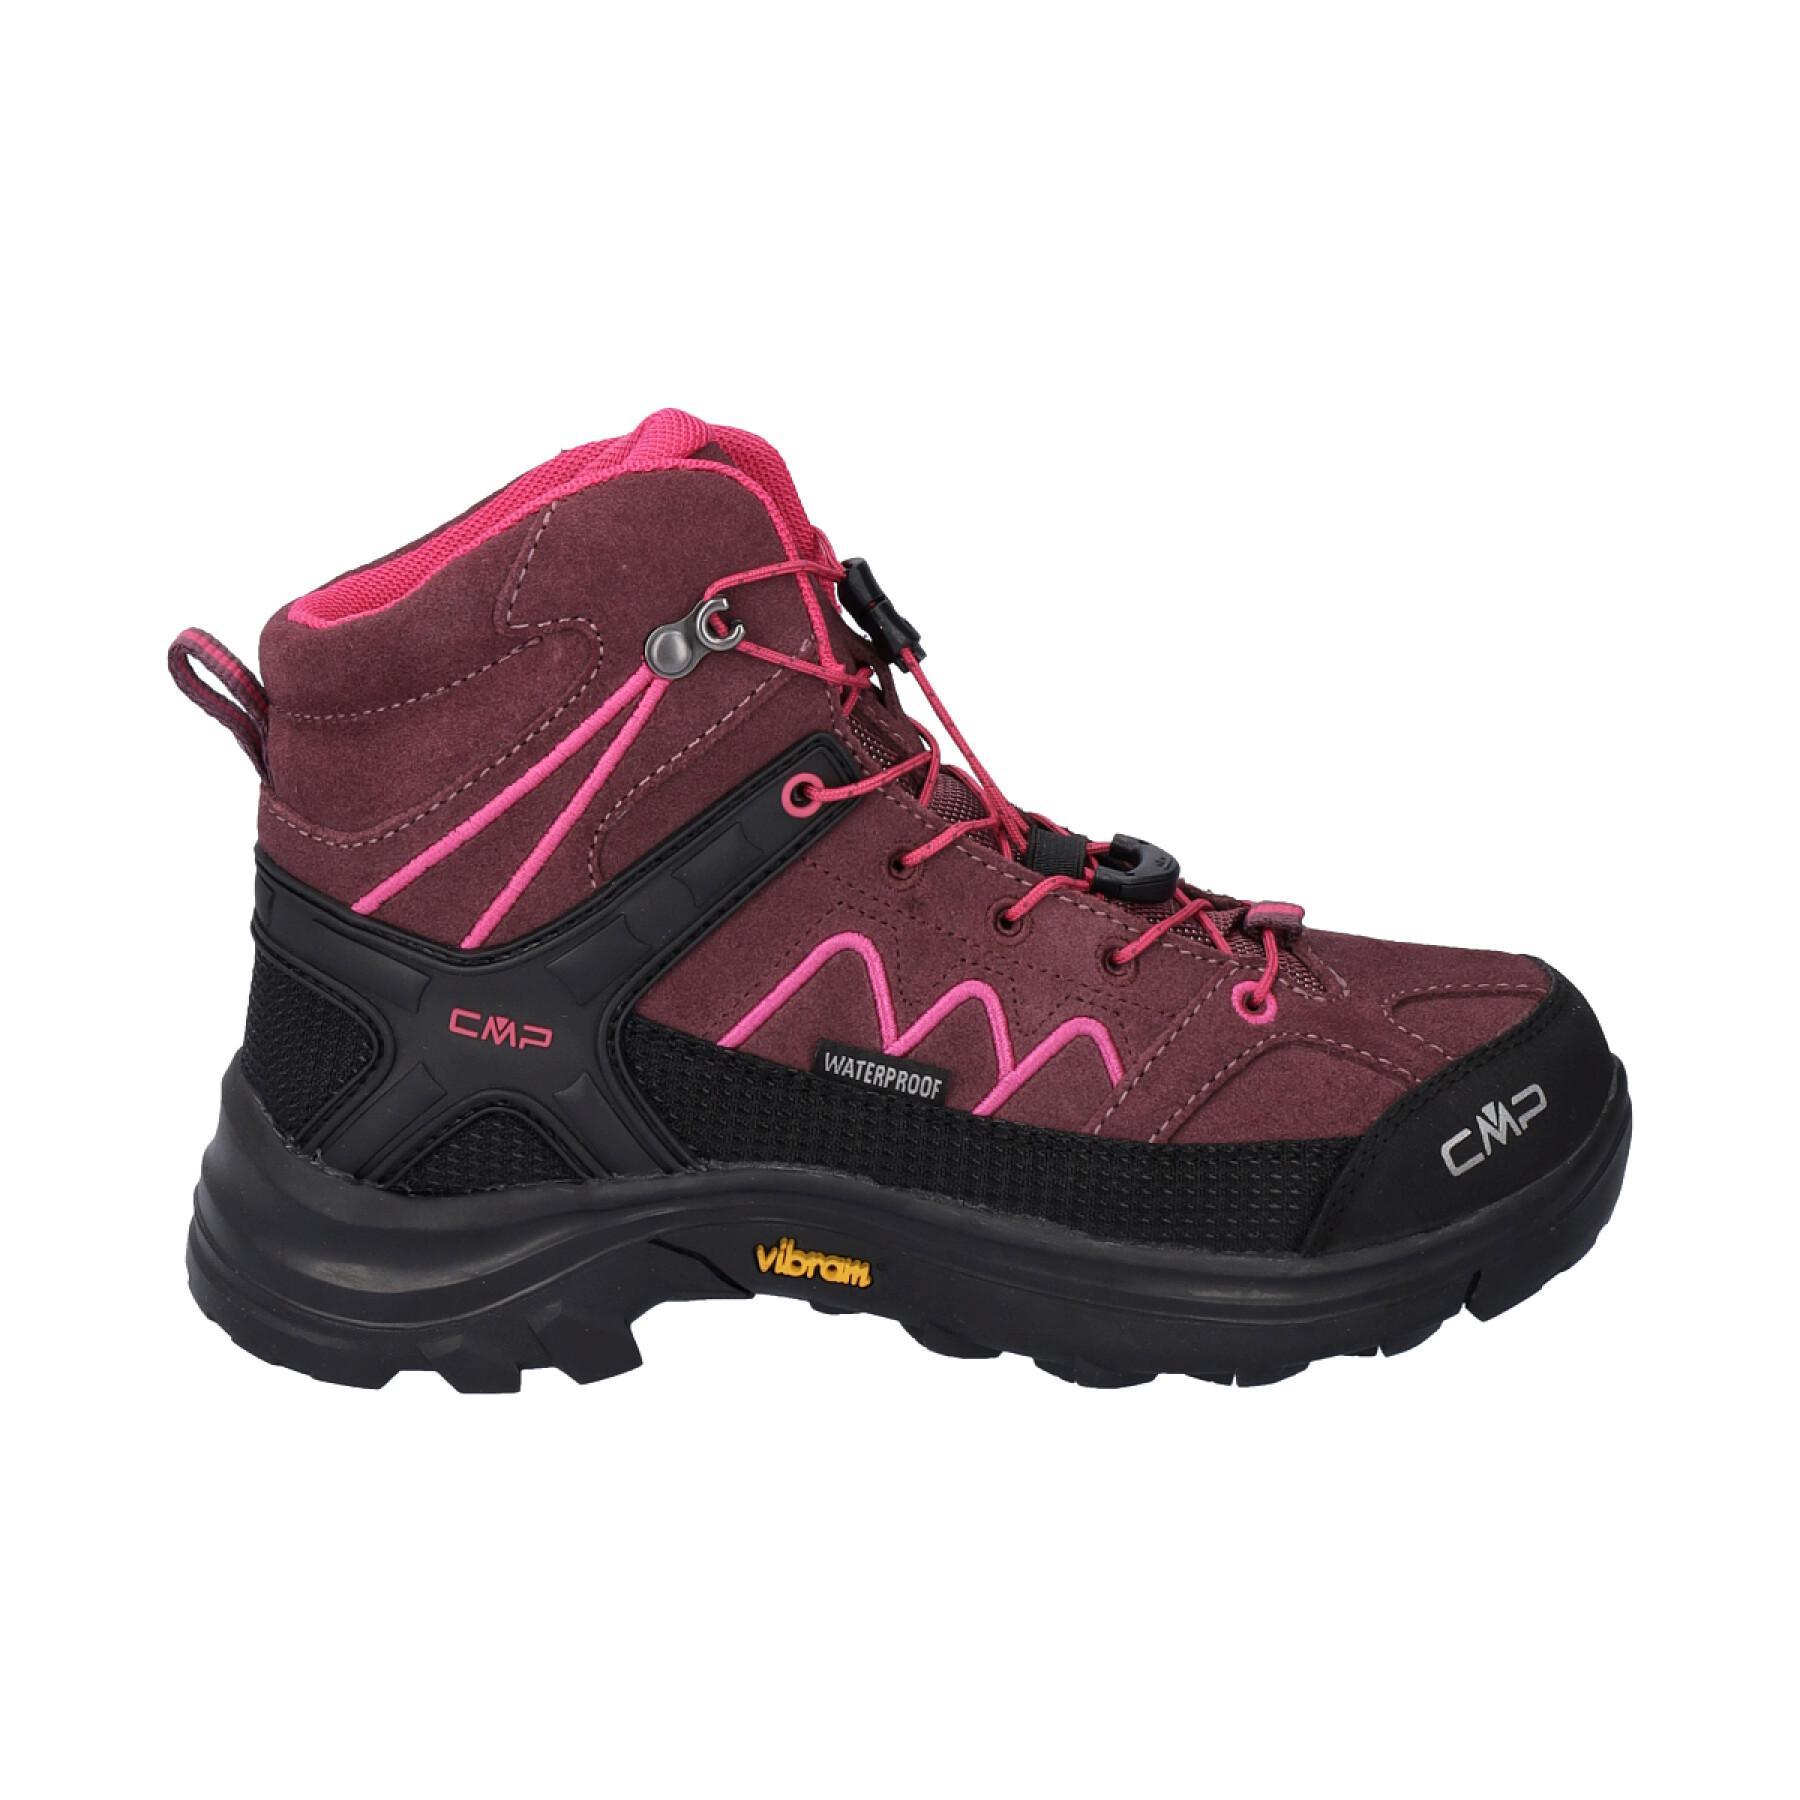 Zapatillas de senderismo para niños CMP Moon Waterproof